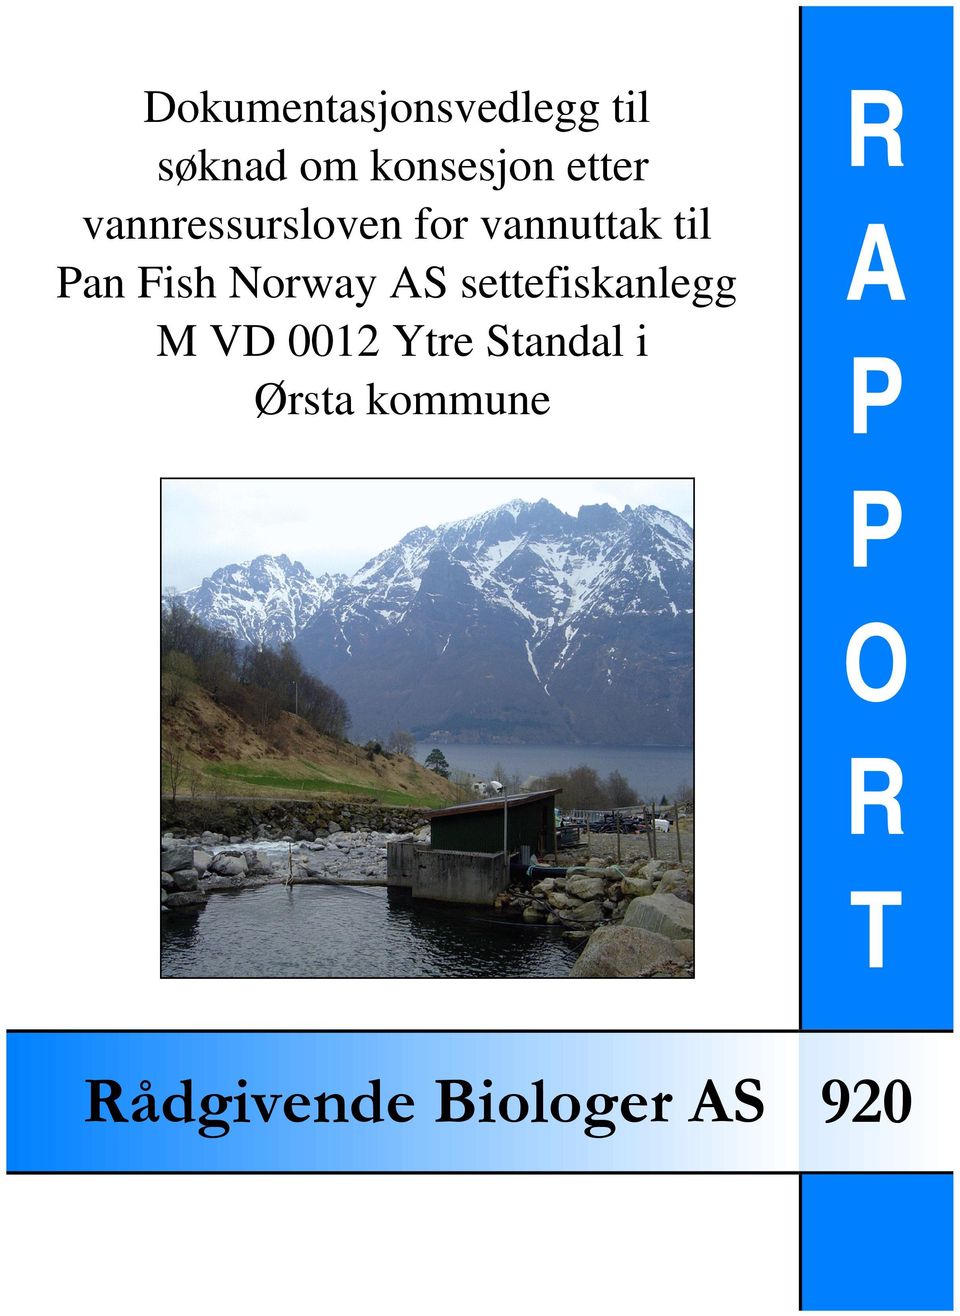 Norway AS settefiskanlegg M VD 0012 Ytre Standal i